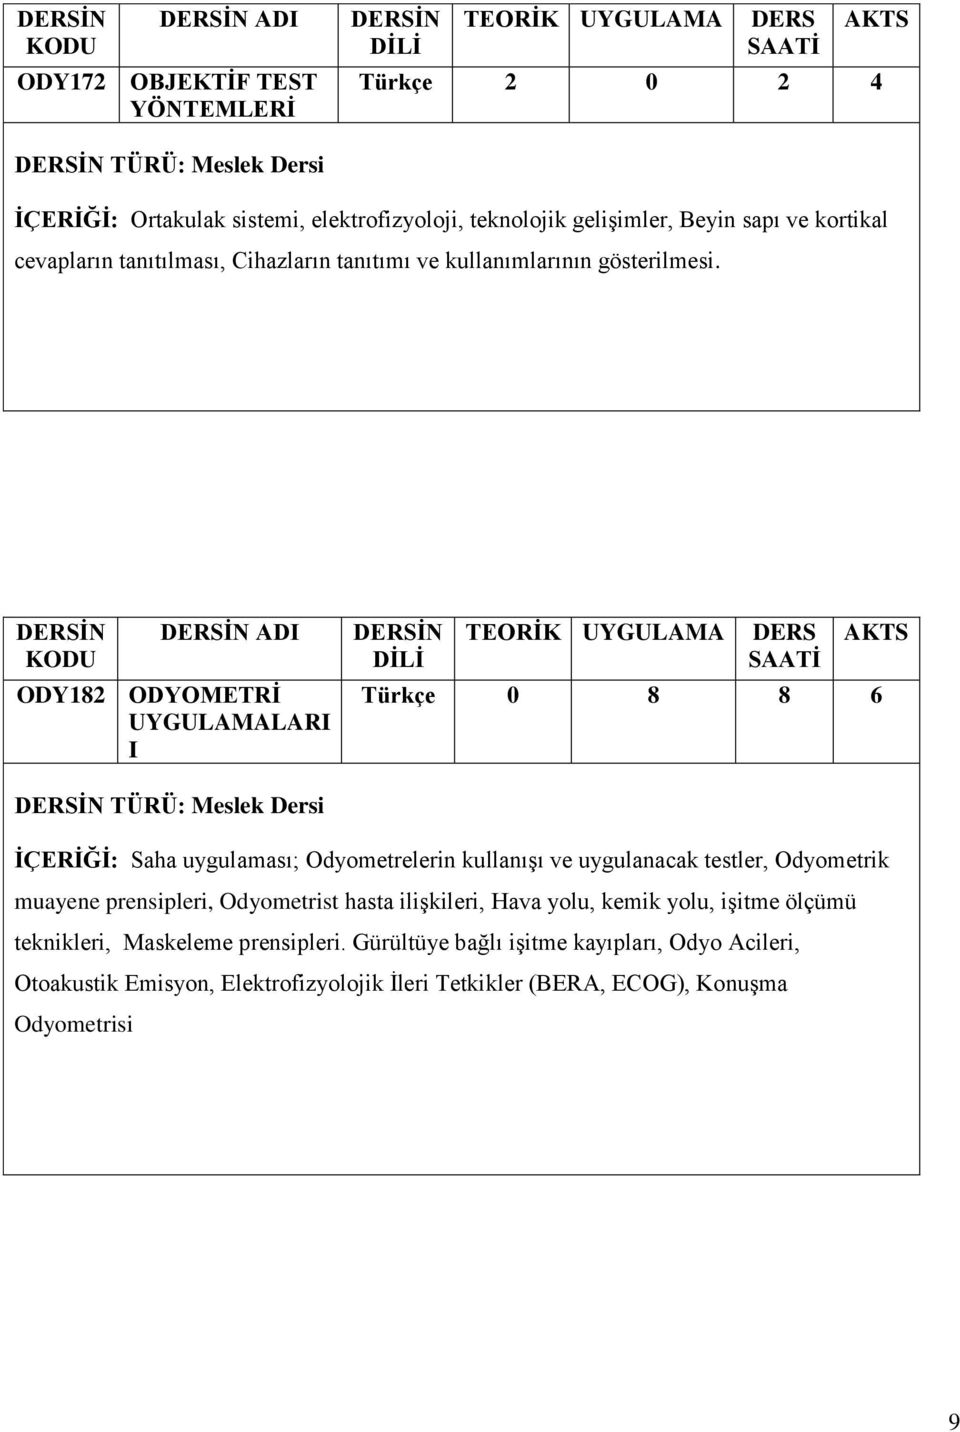 ADI ODY182 ODYOMETRİ UYGULAMALARI I Türkçe 0 8 8 6 TÜRÜ: Meslek Dersi İÇERİĞİ: Saha uygulaması; Odyometrelerin kullanışı ve uygulanacak testler, Odyometrik muayene